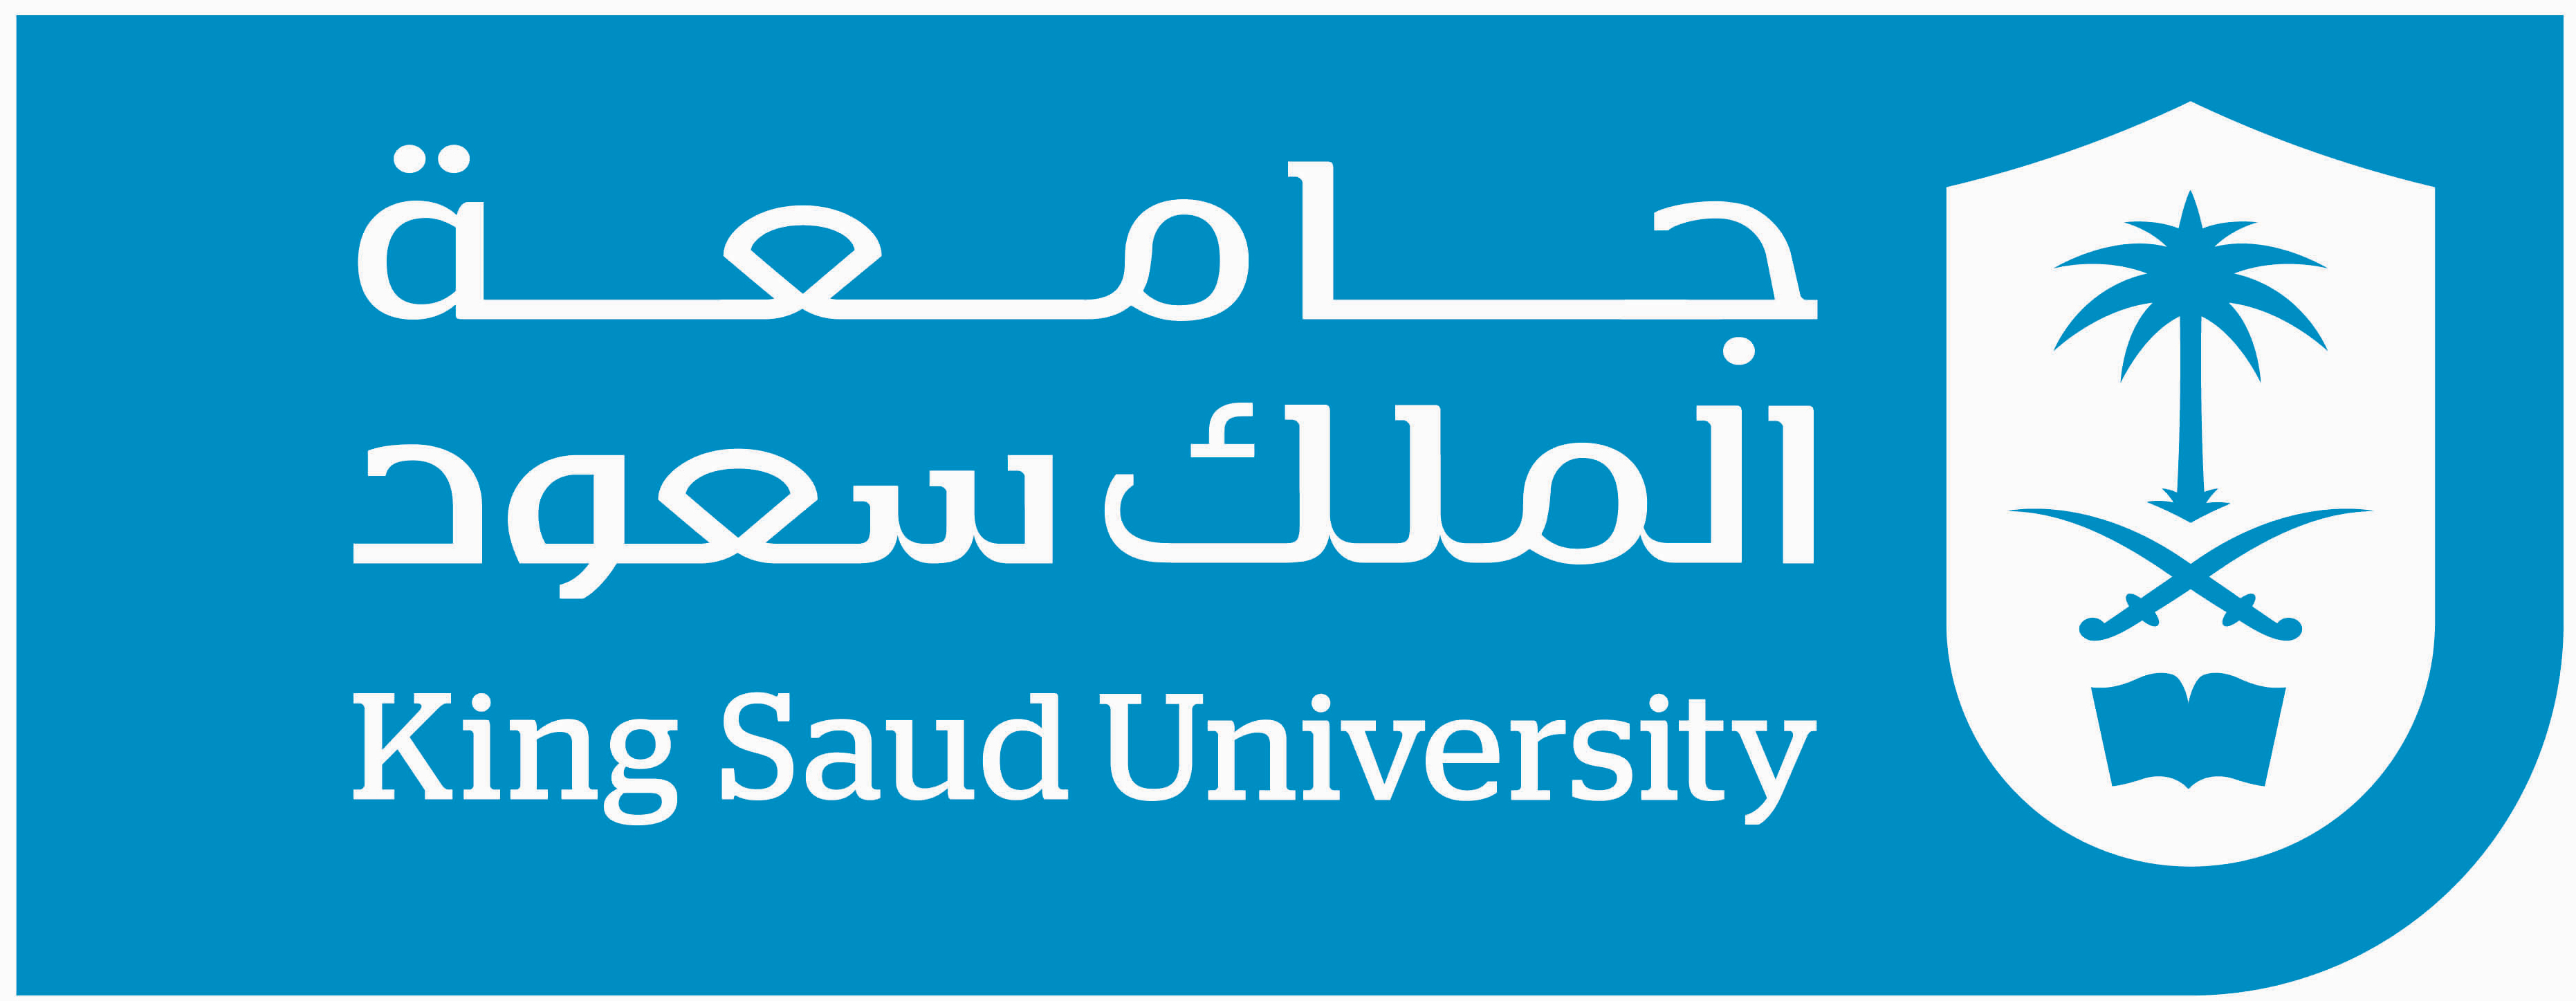 جامعه القصيم اعضاء هييه التدريس بجامعه الملك سعود